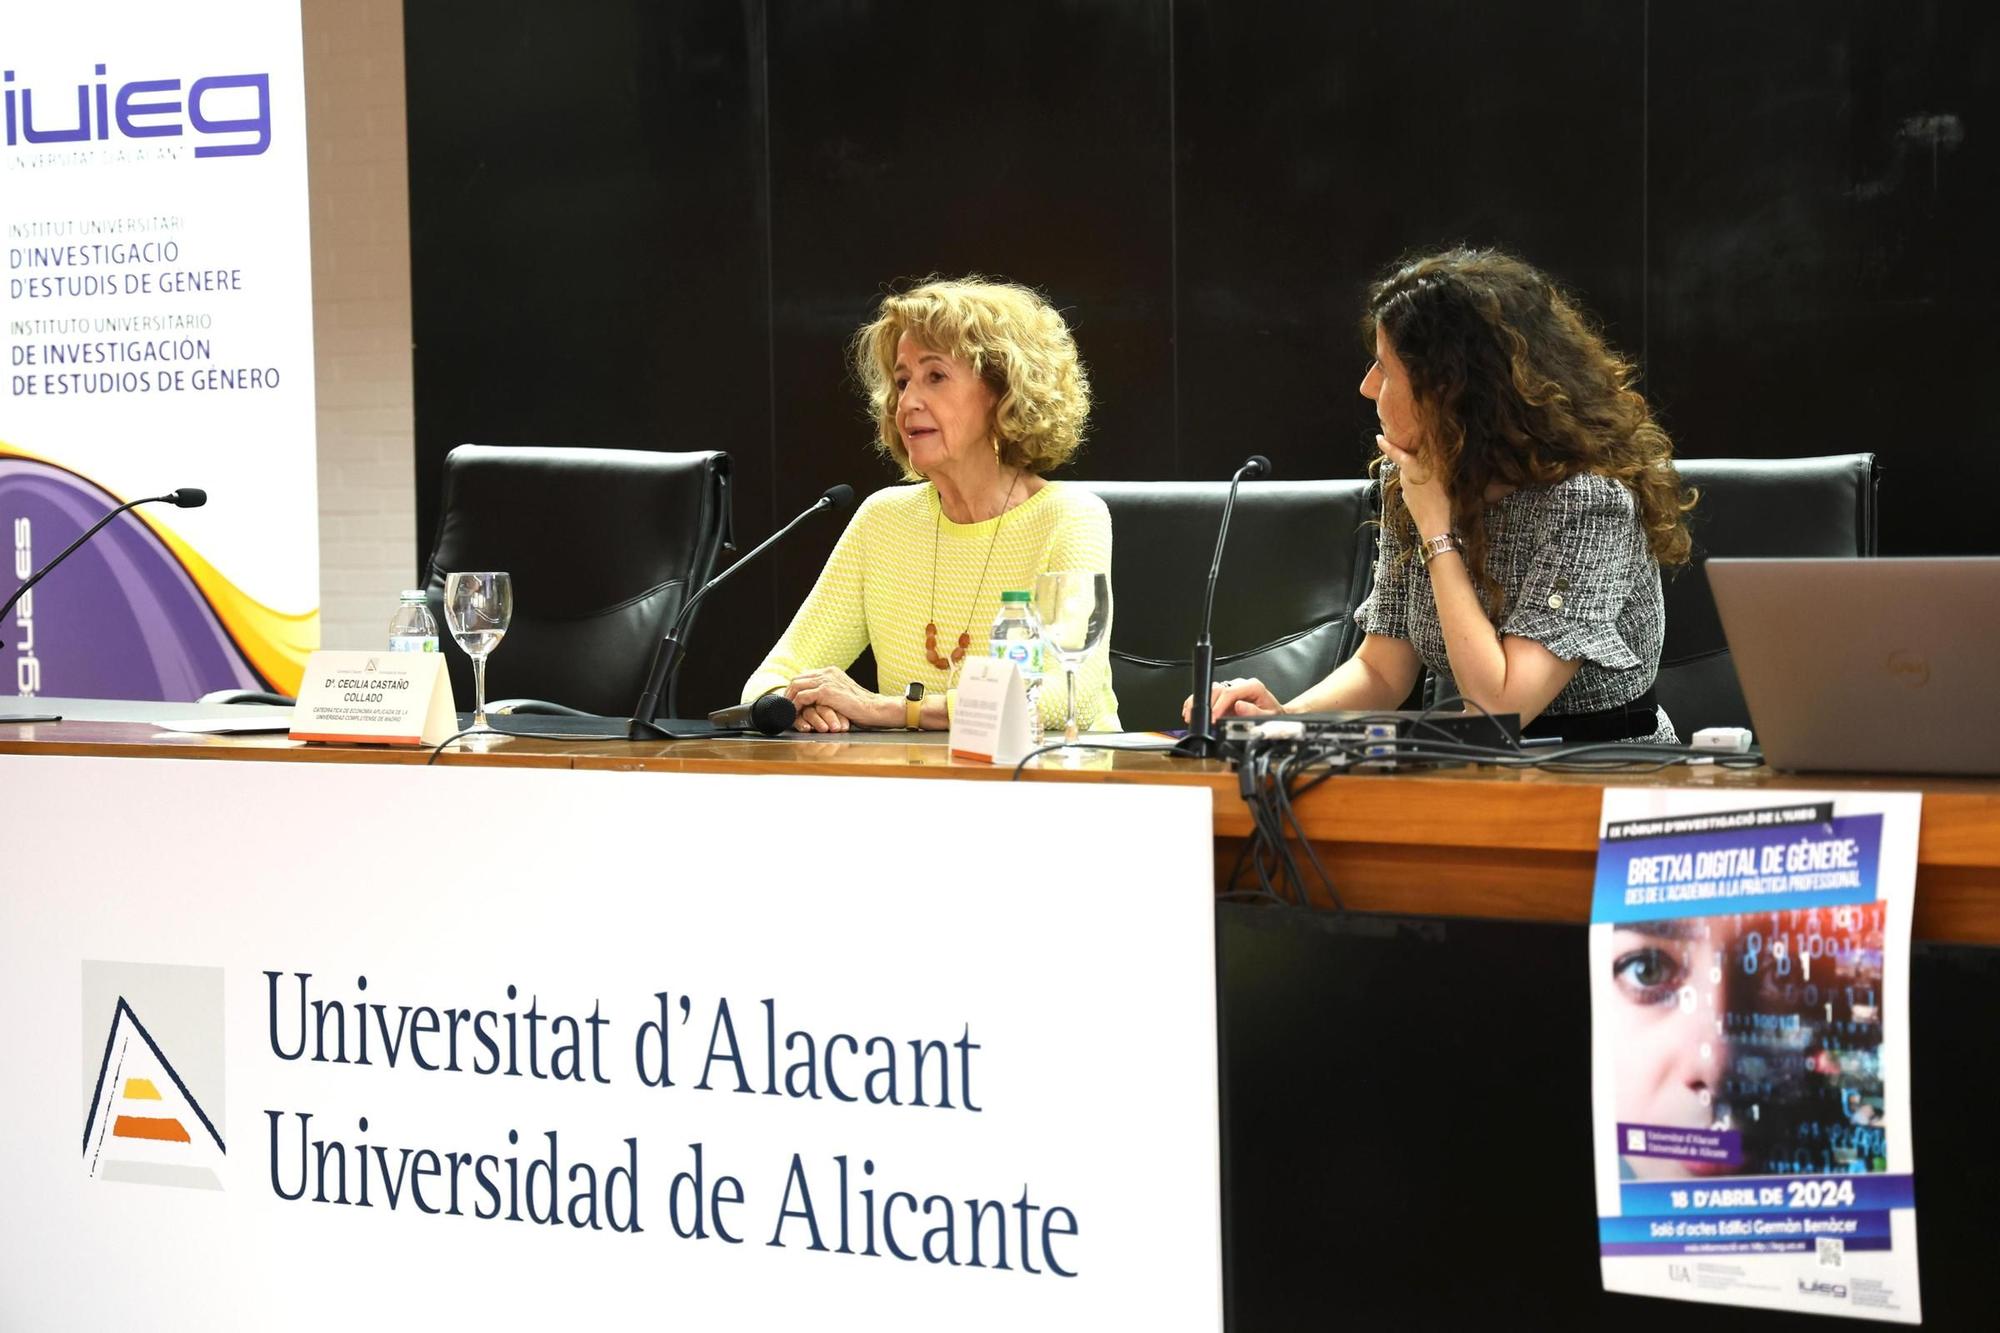 Cecilia Castaño habla en la UA de la brecha digital de género